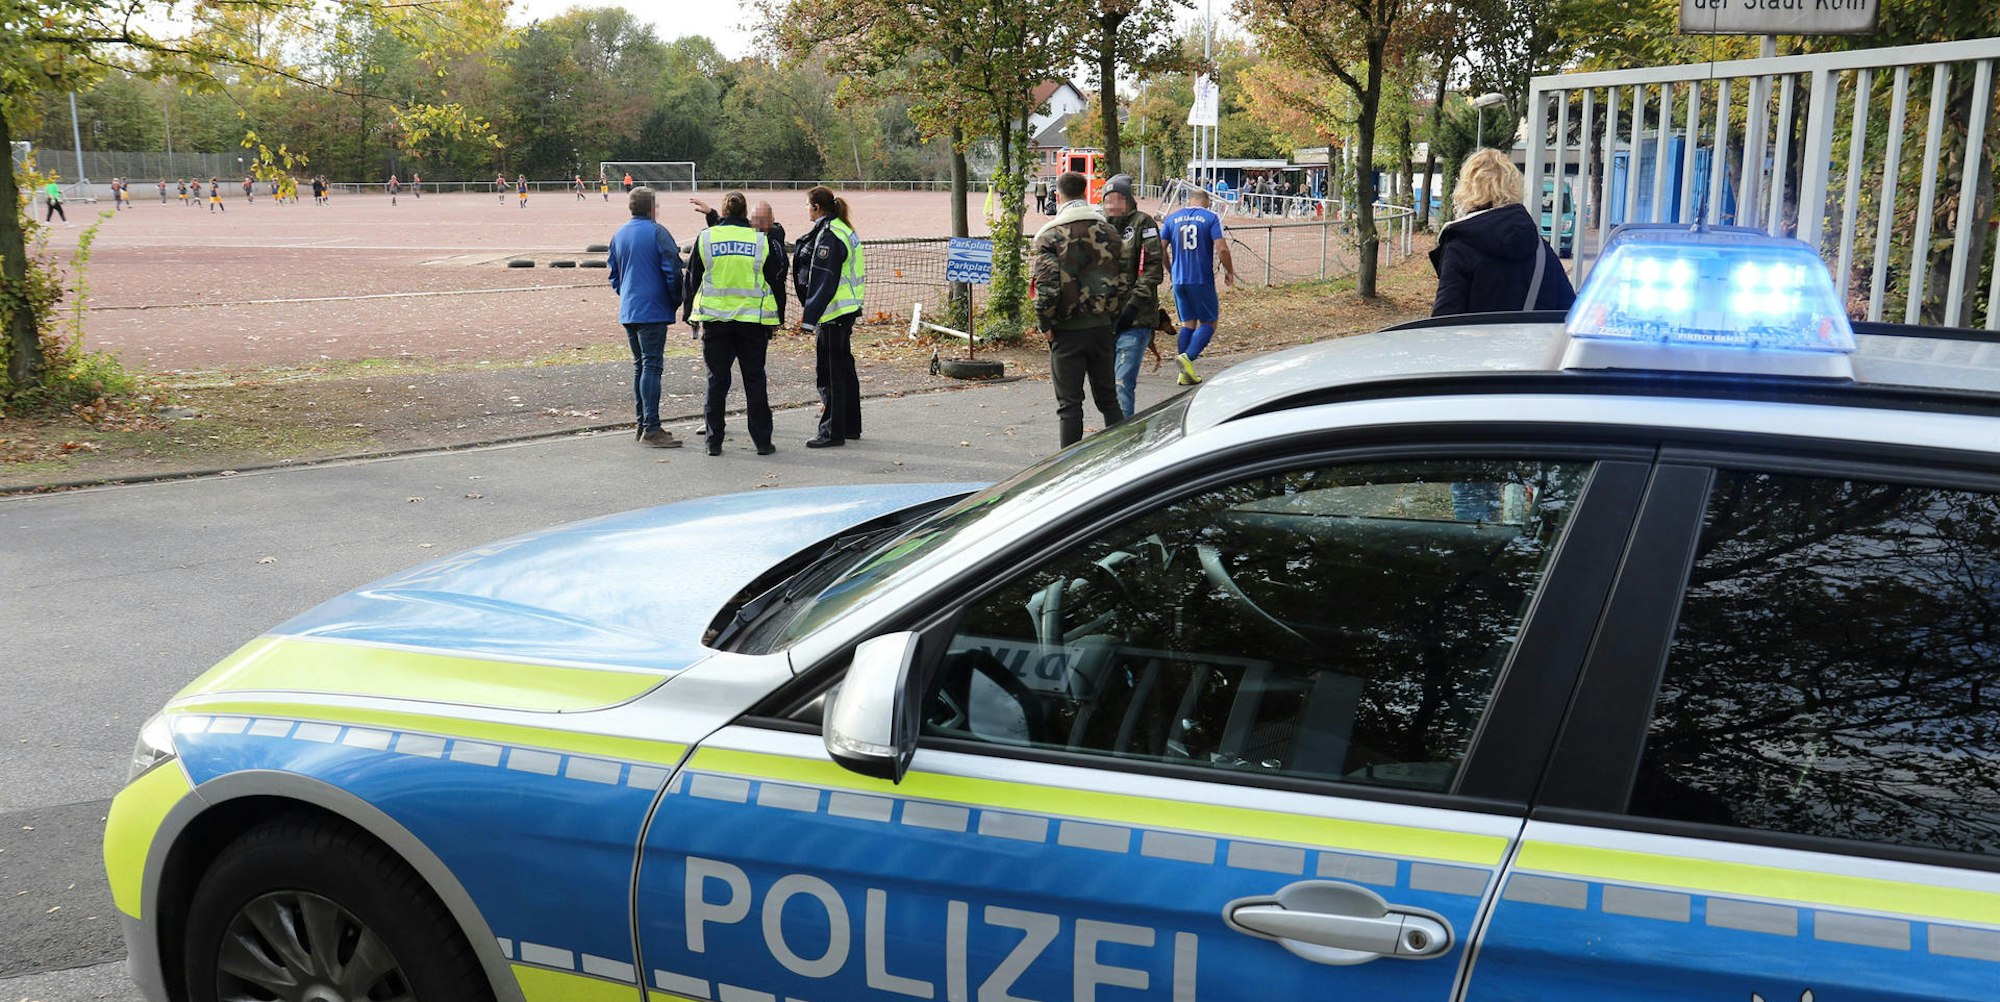 Polizei_Niehler_Hafen